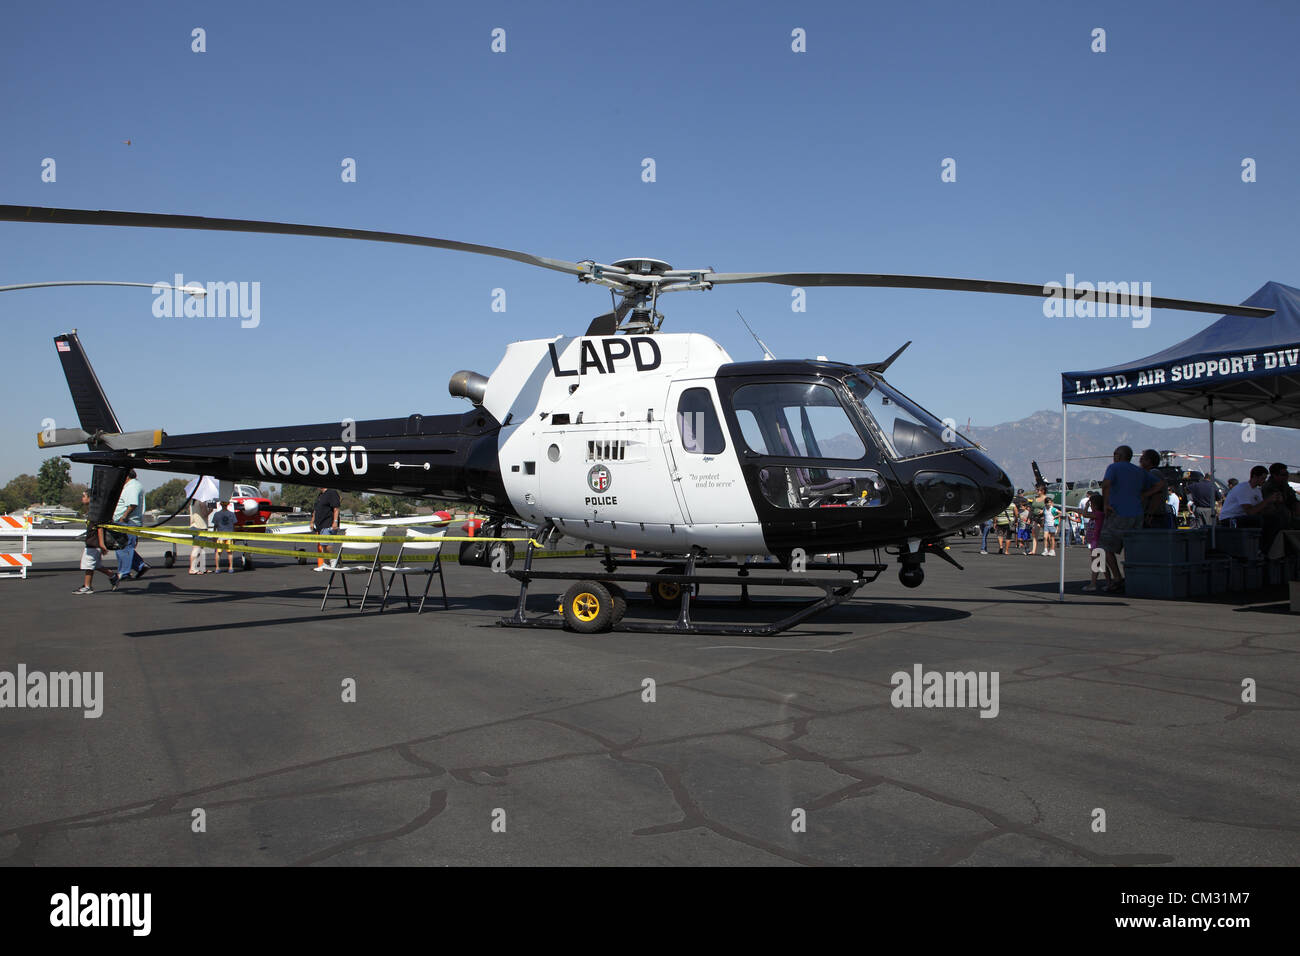 EL MONTE, Kalifornien, USA - 23. September 2012 - eine breite Auswahl von Flugzeugen auf dem Display an der El Monte Airshow am 23. September 2012.  Das LAPD ASD ist der größte Gesetz Durchsetzung Lufteinheit der Welt Stockfoto